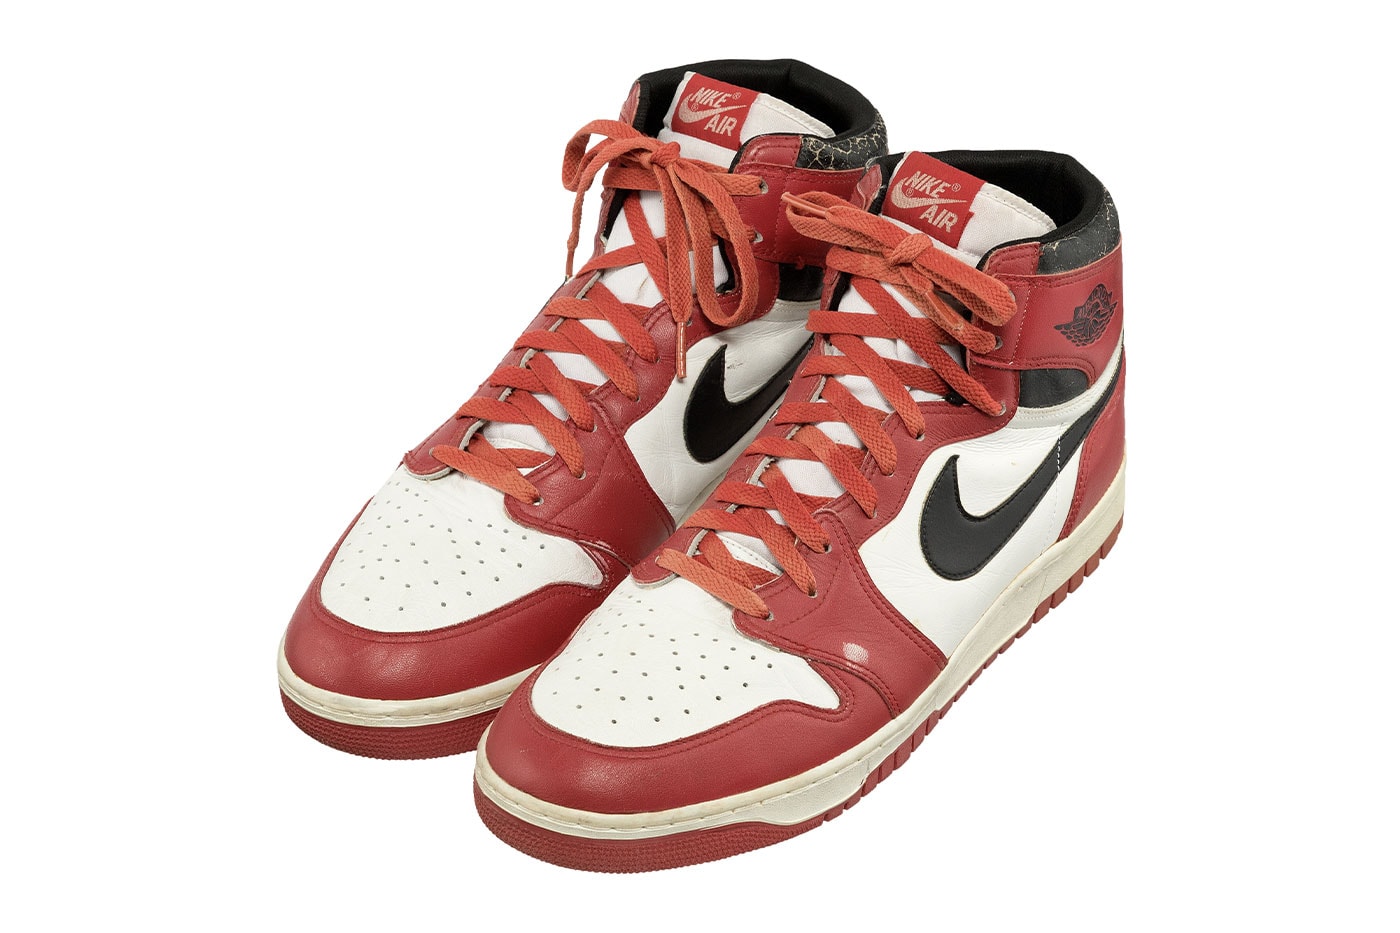 マイケル・ジョーダン実着用のエアジョーダン1 が1億円以上で落札 ダンク ソール dunk A Signed Pair of Michael Jordan's 1986 Game Worn Nike Air Jordan 1 Sneakers Is Available for Auction heritage auctions sports memorabilia chicago bulls 